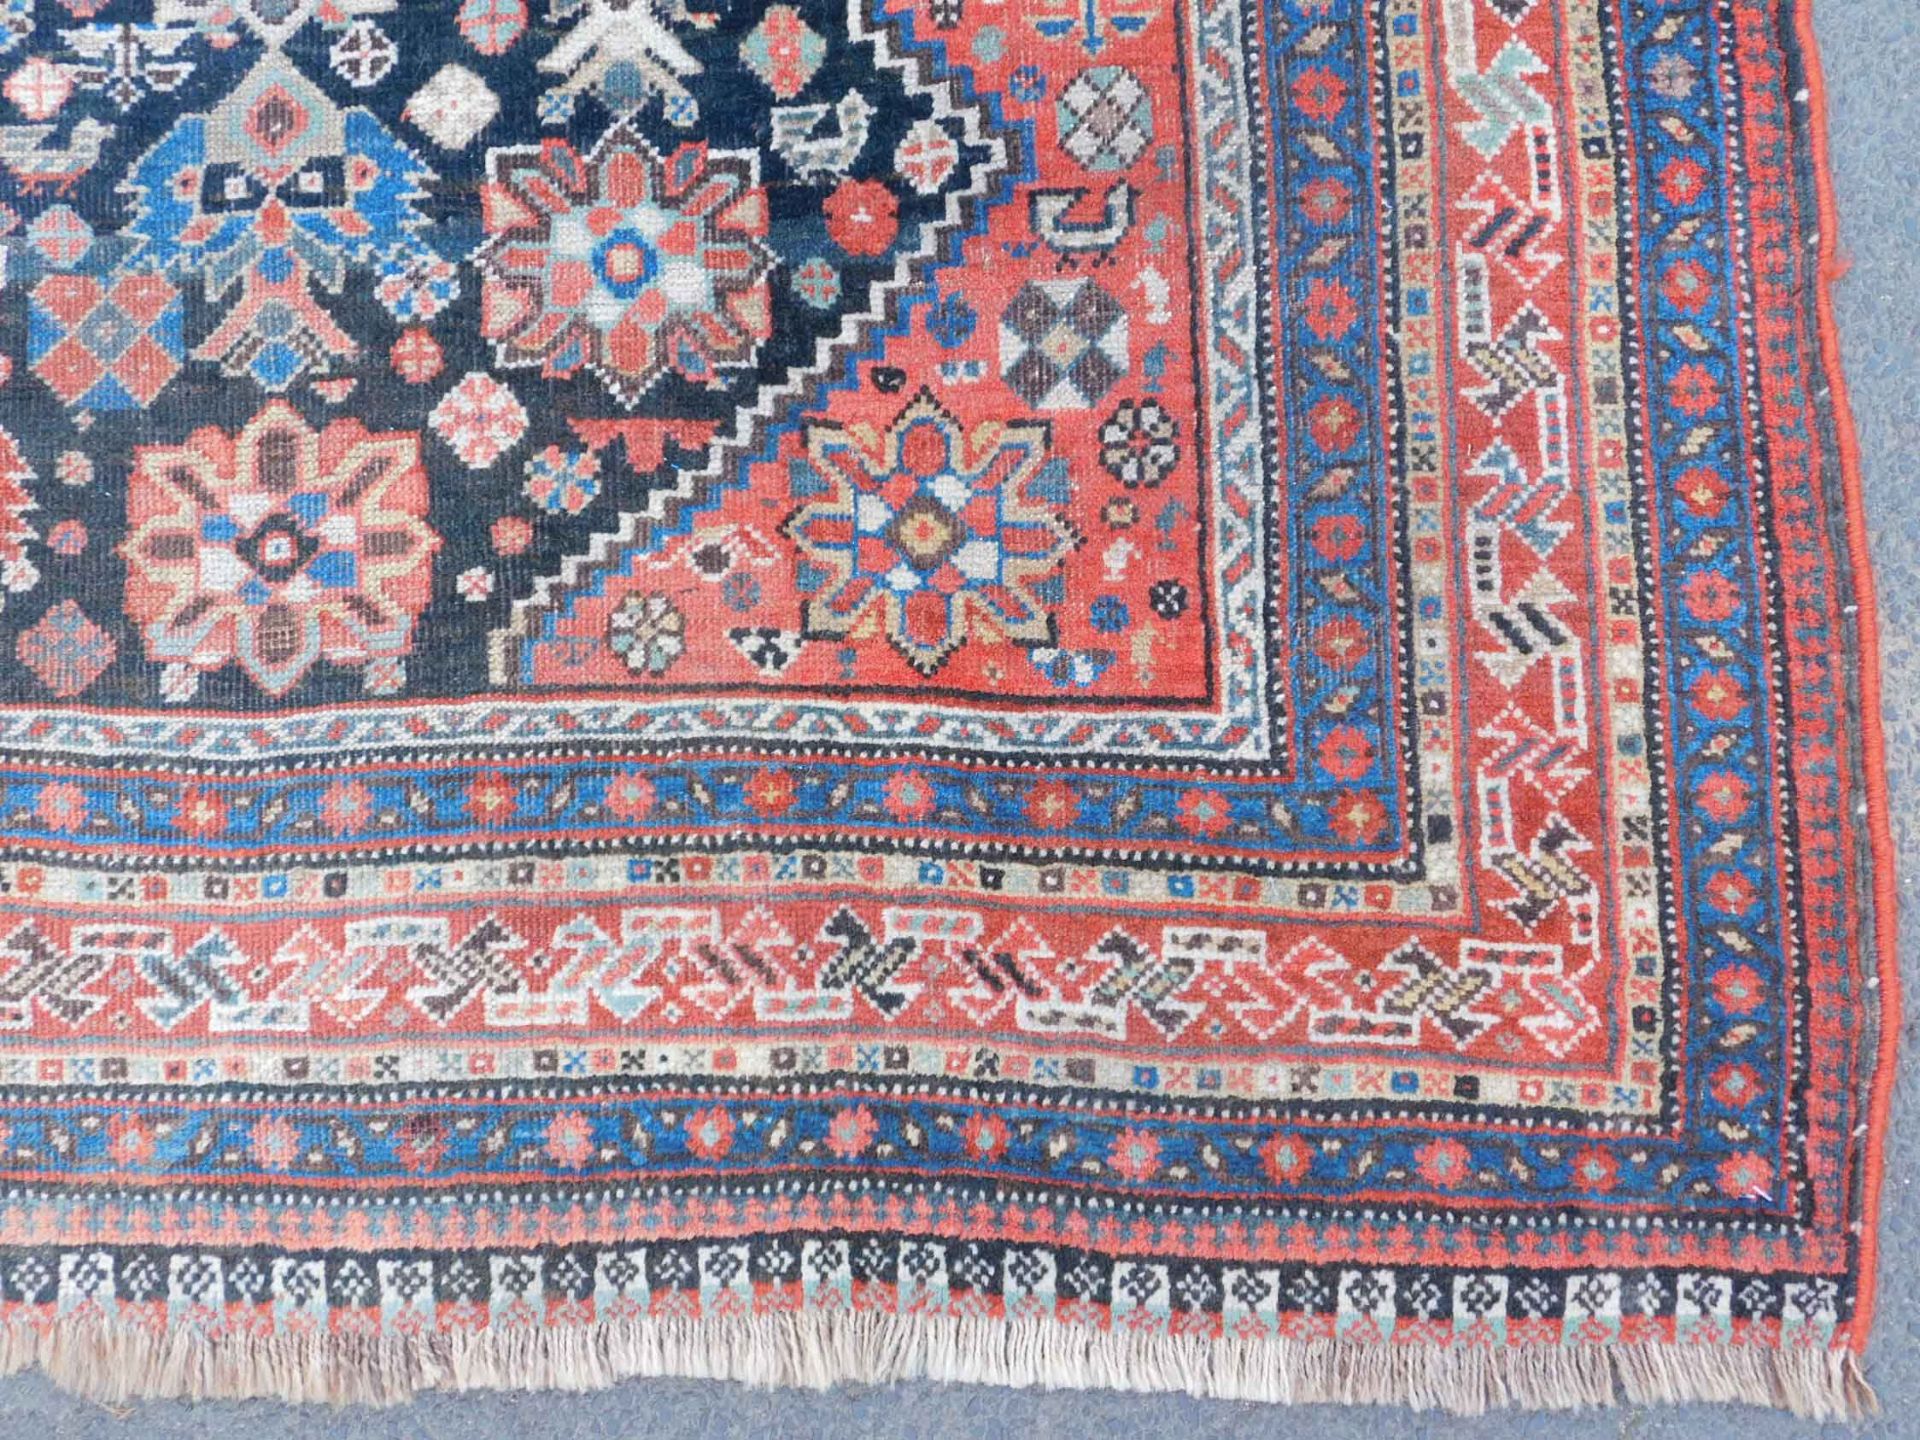 Khamseh Persian carpet. Iran. Antique, around 100 - 150 years old. - Image 3 of 9